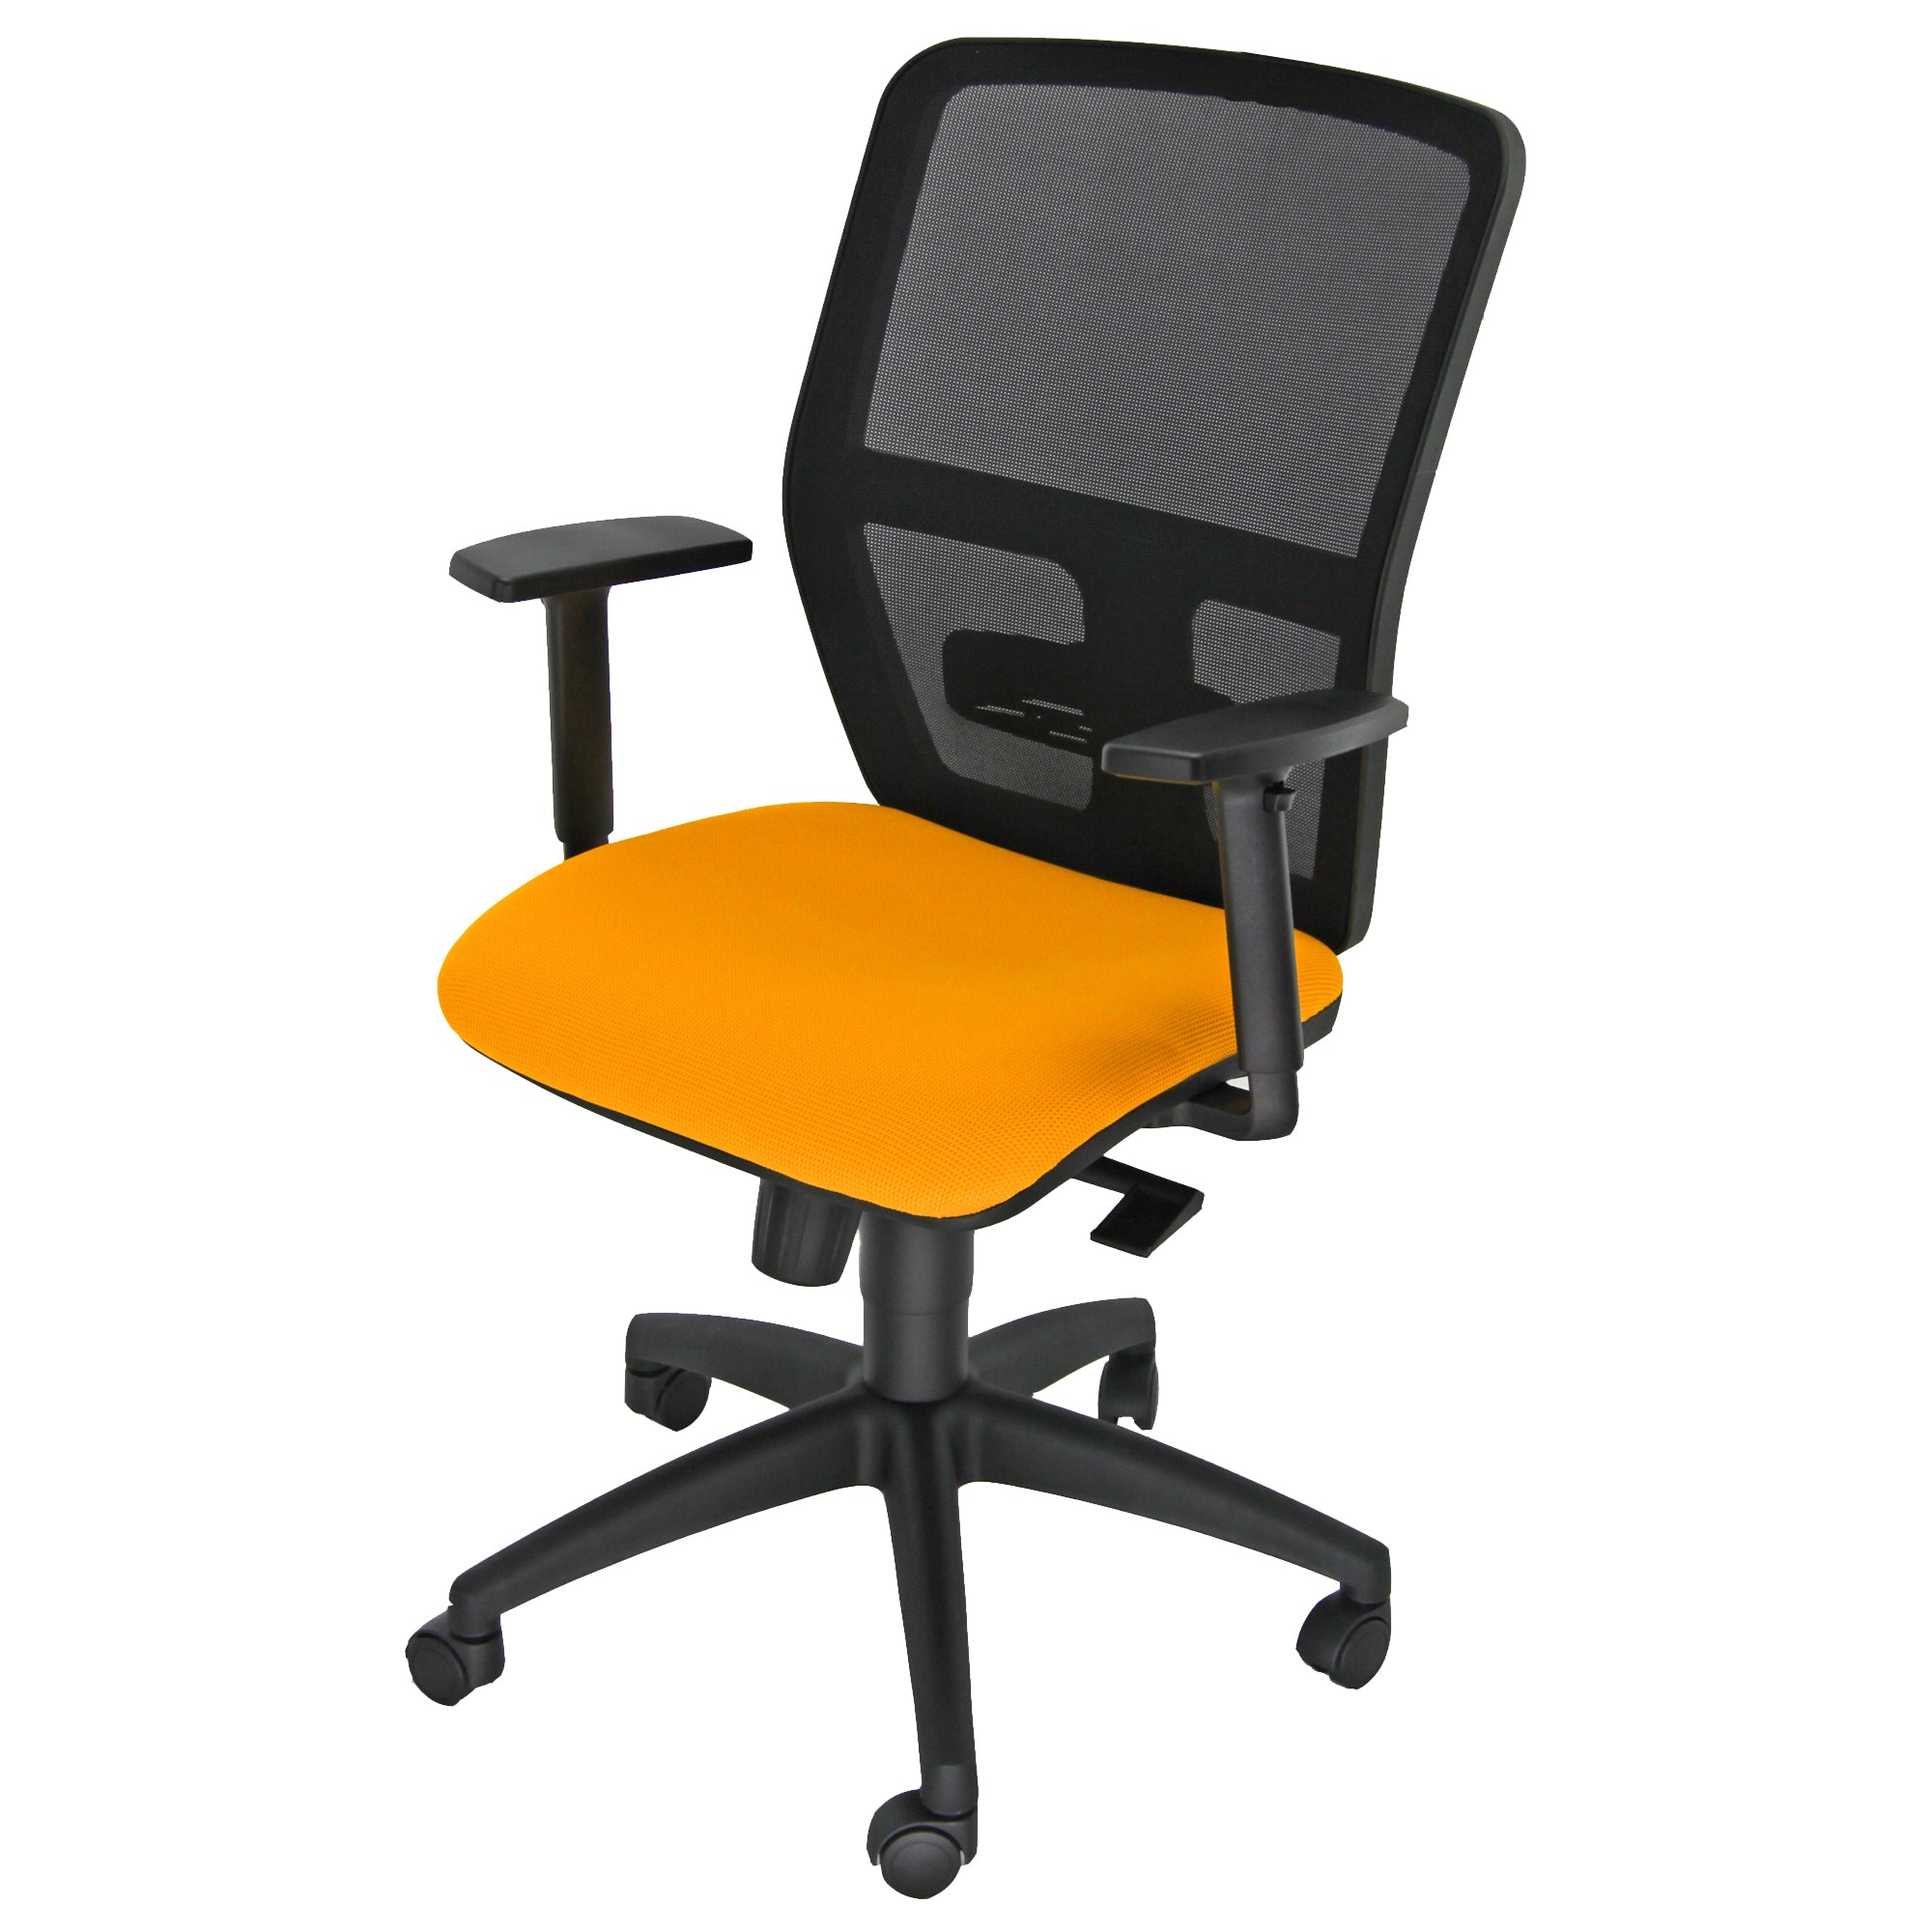 unisit-seduta-operativa-ergonomica-kemper-kma-arancio-braccioli-regolabili